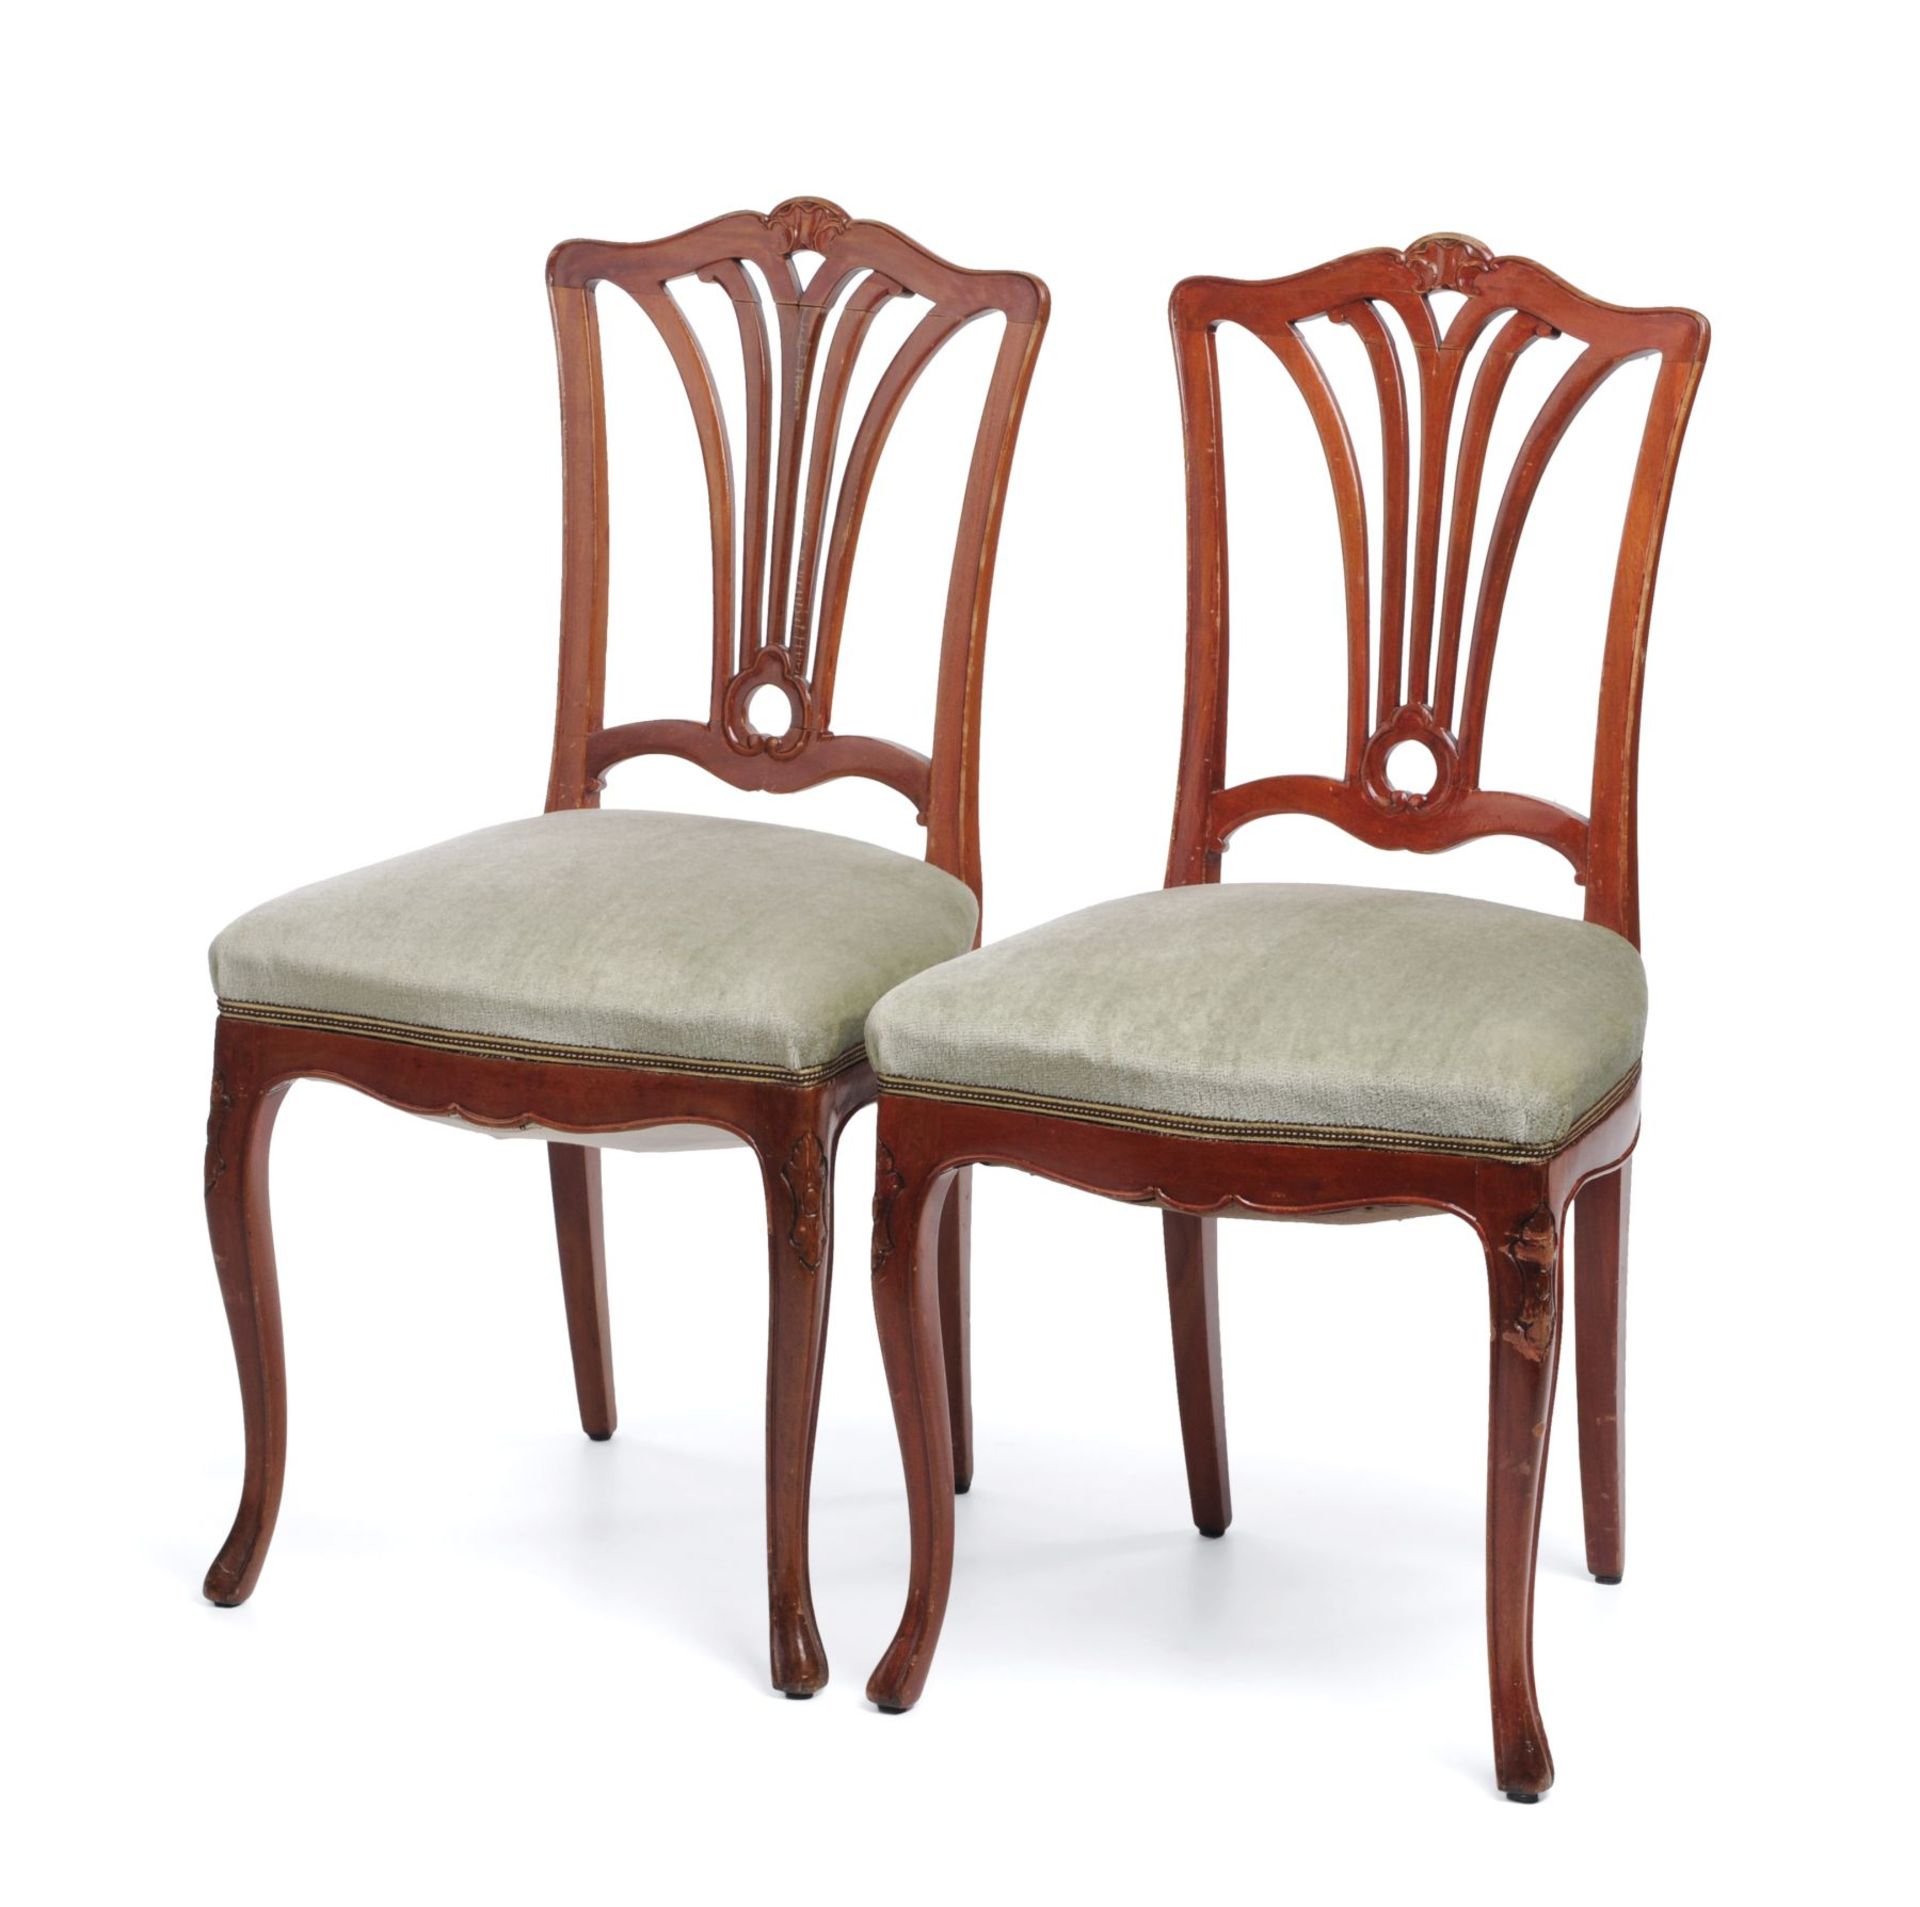 Paar Salonstühle. Wohl um 1900. Buche, rötlich lasiert und lackpoliert. Trapezförmige Sitzflächen